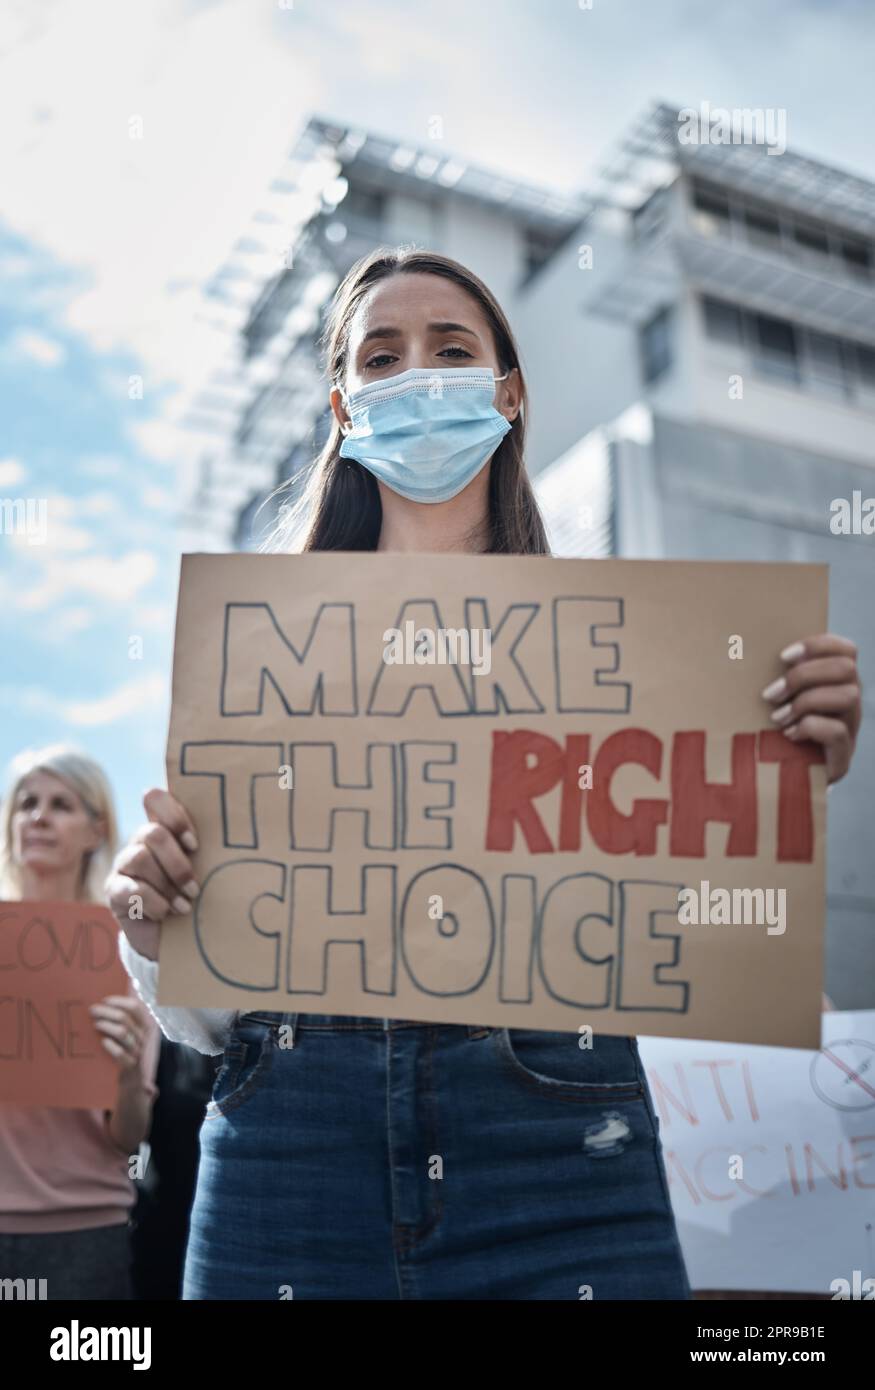 Prendere la decisione giusta per lei, una giovane donna che protestava per una marcia di vaccino covid. Foto Stock